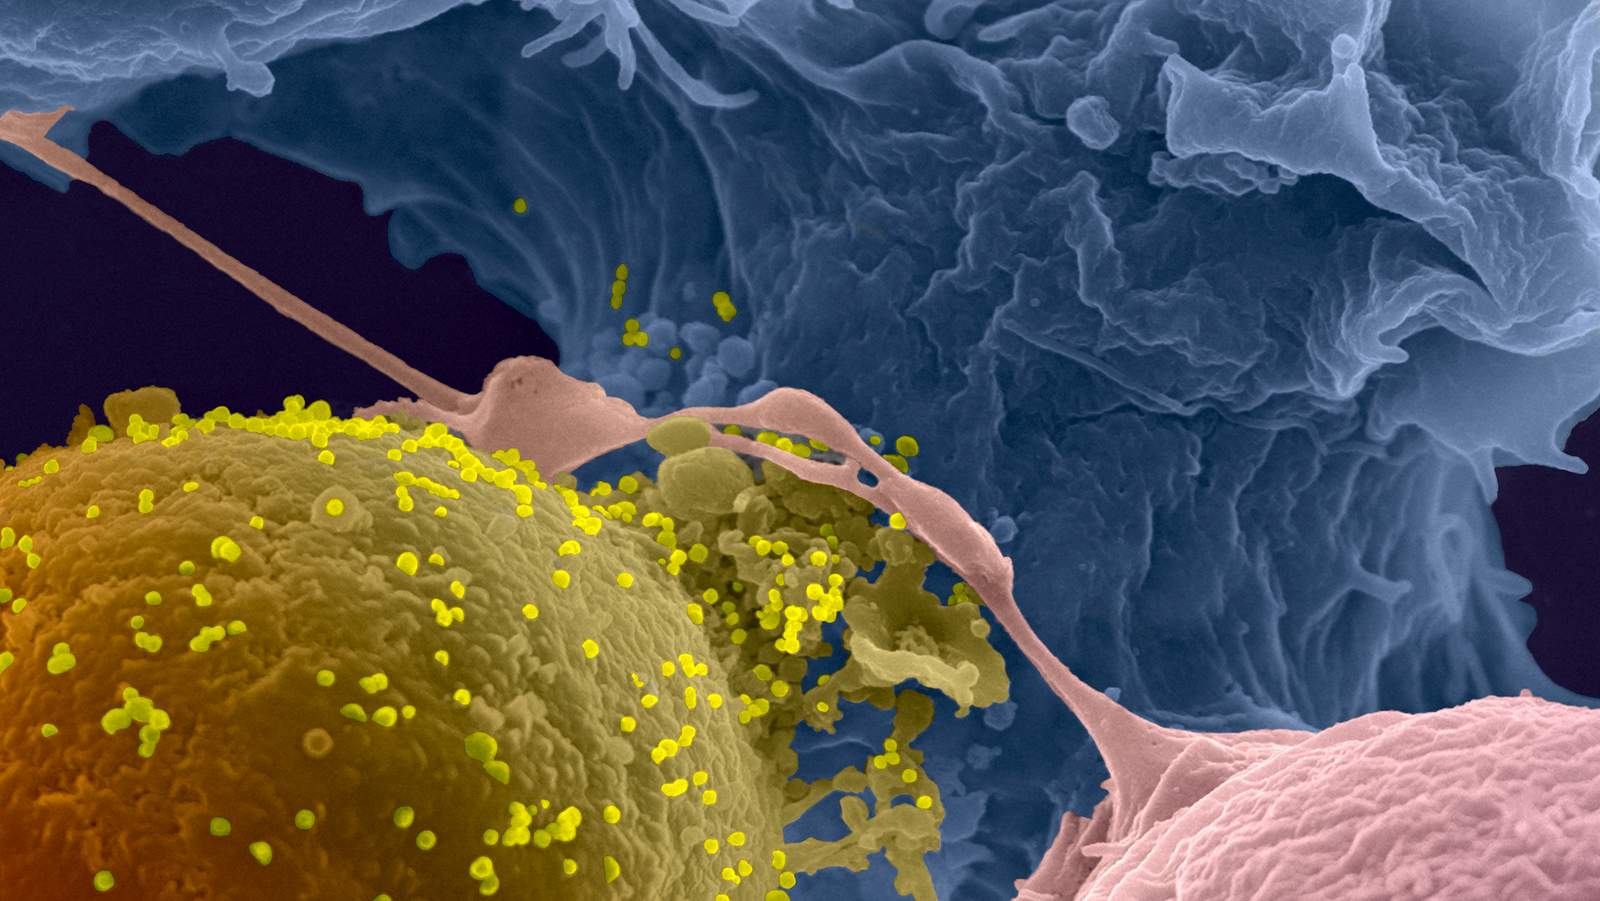 Contact entre un lymphocyte infecté par le VIH (en jaune) avec un lymphocyte non-infecté. Image acquise par microscopie électronique à balayage.